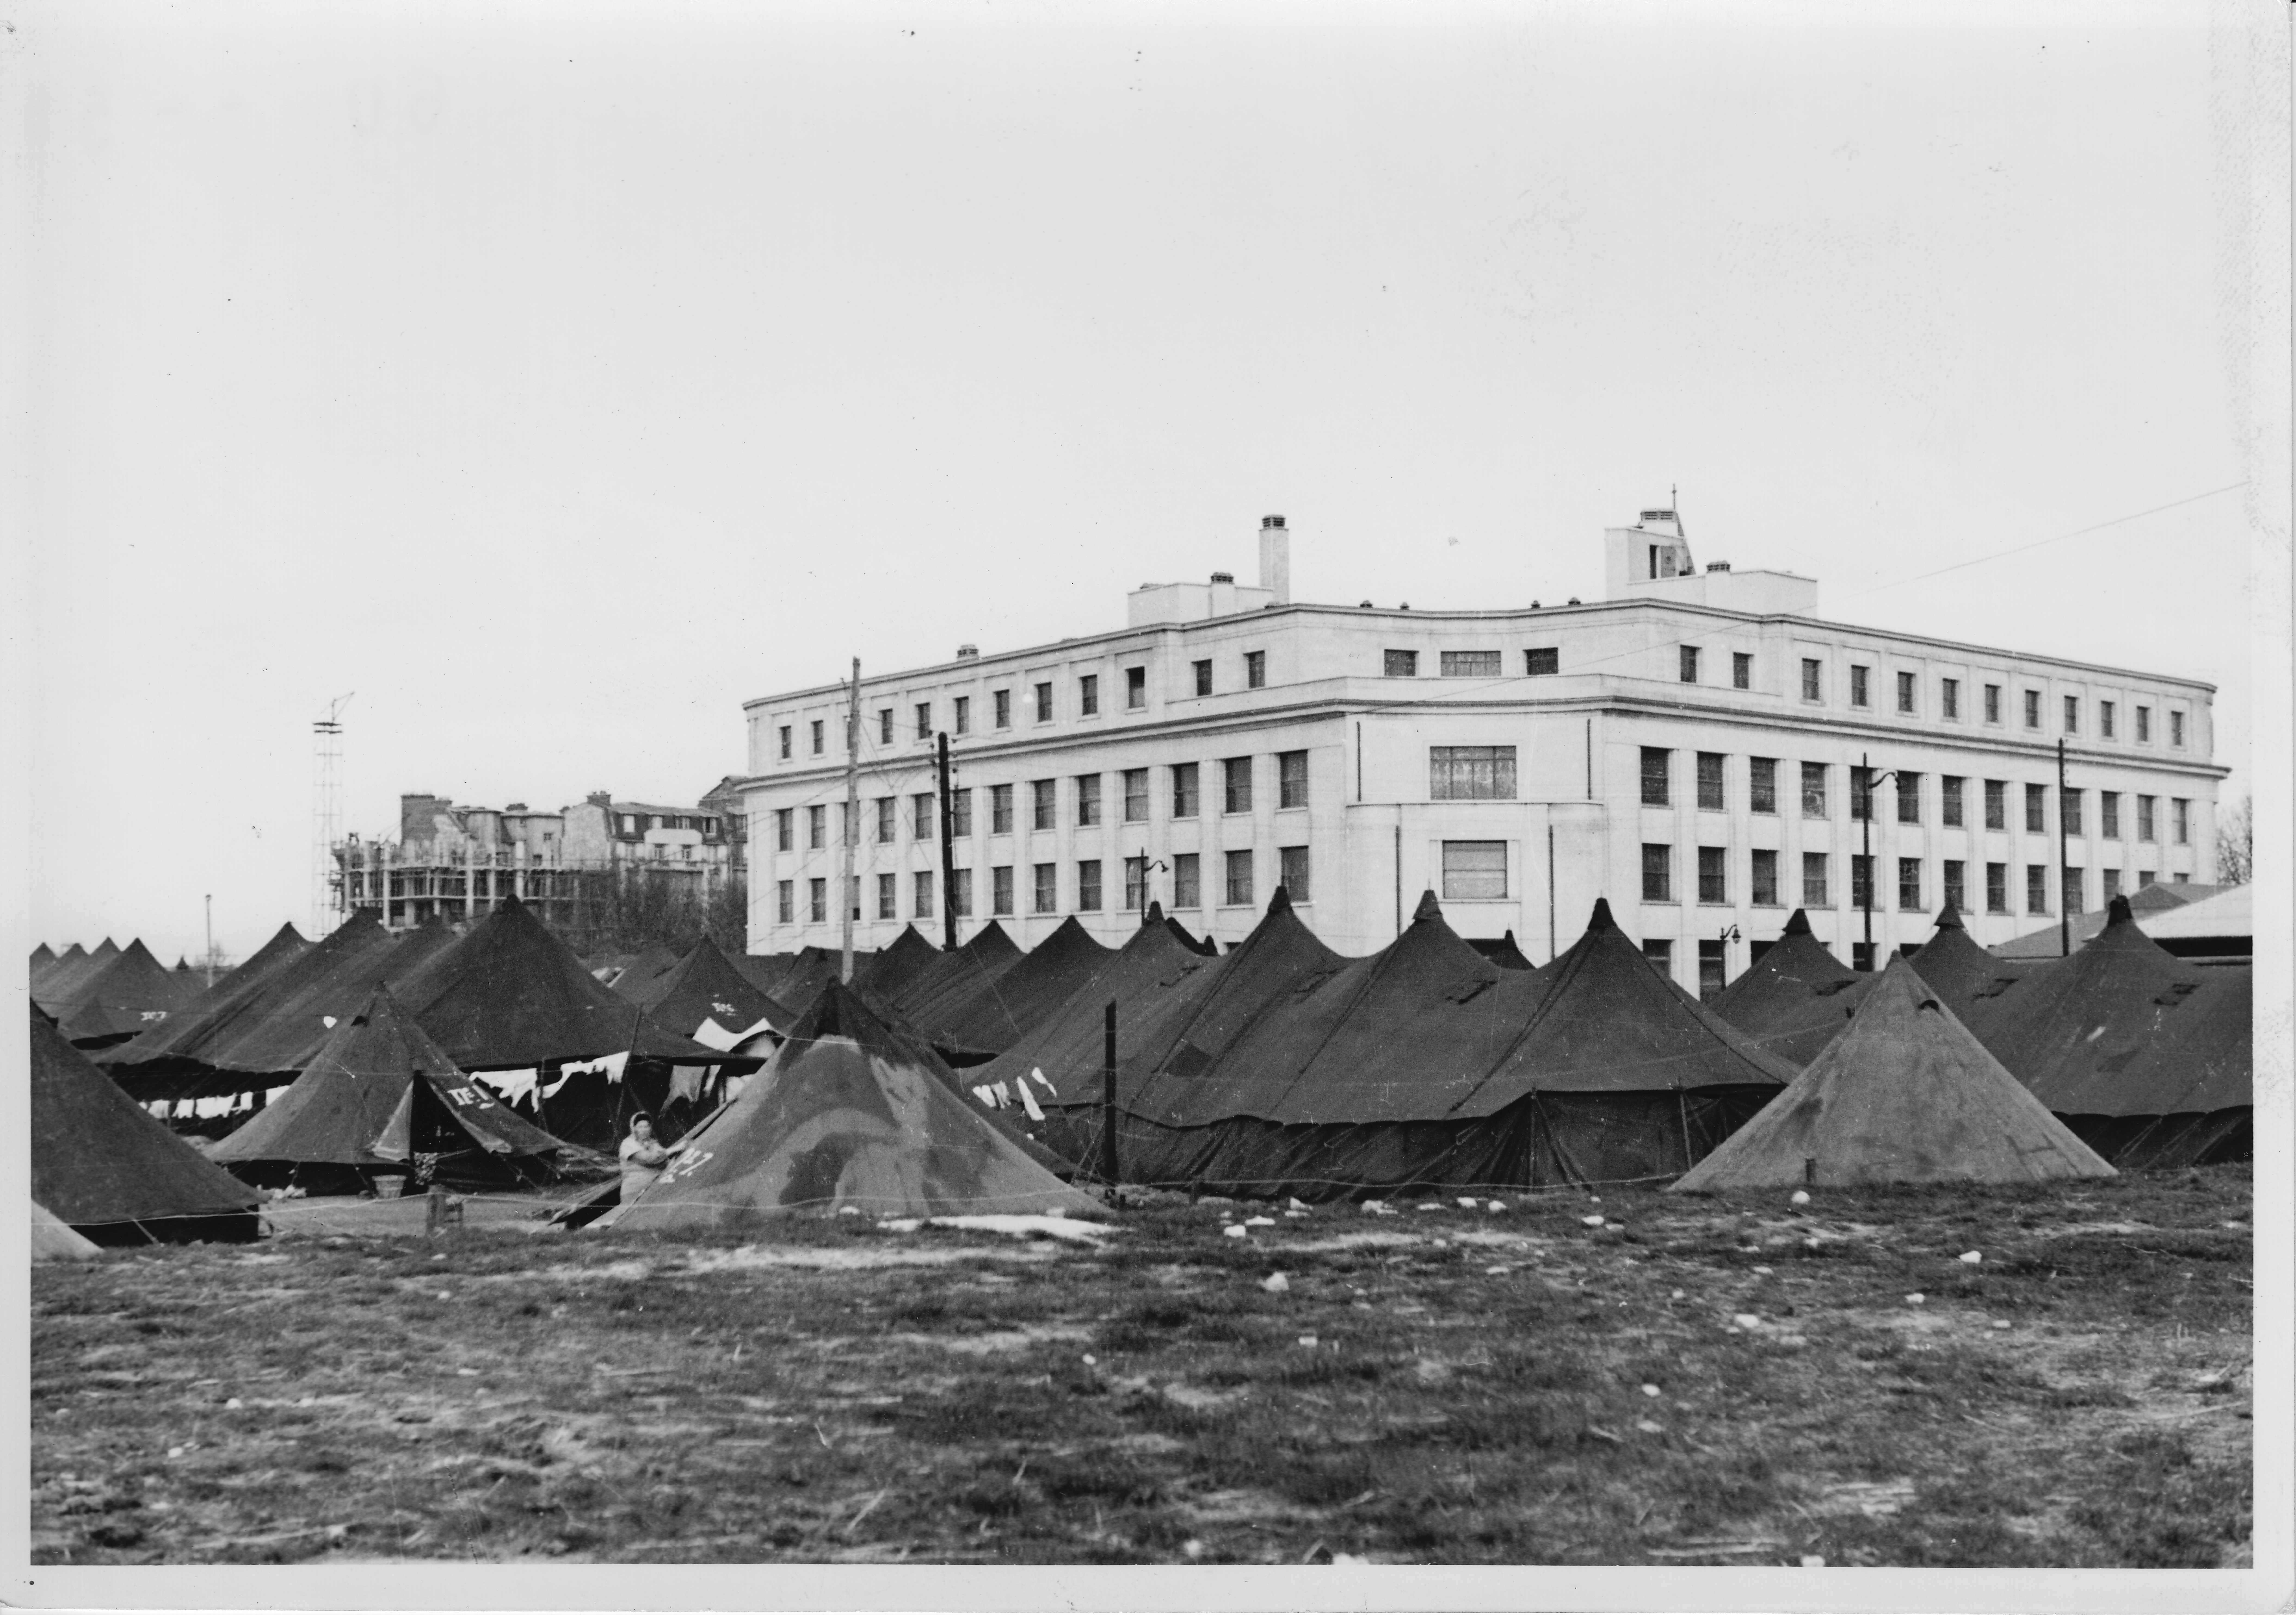 Installation de tentes Porte de Vanves à Paris, février 1954. ©Emmaüs International